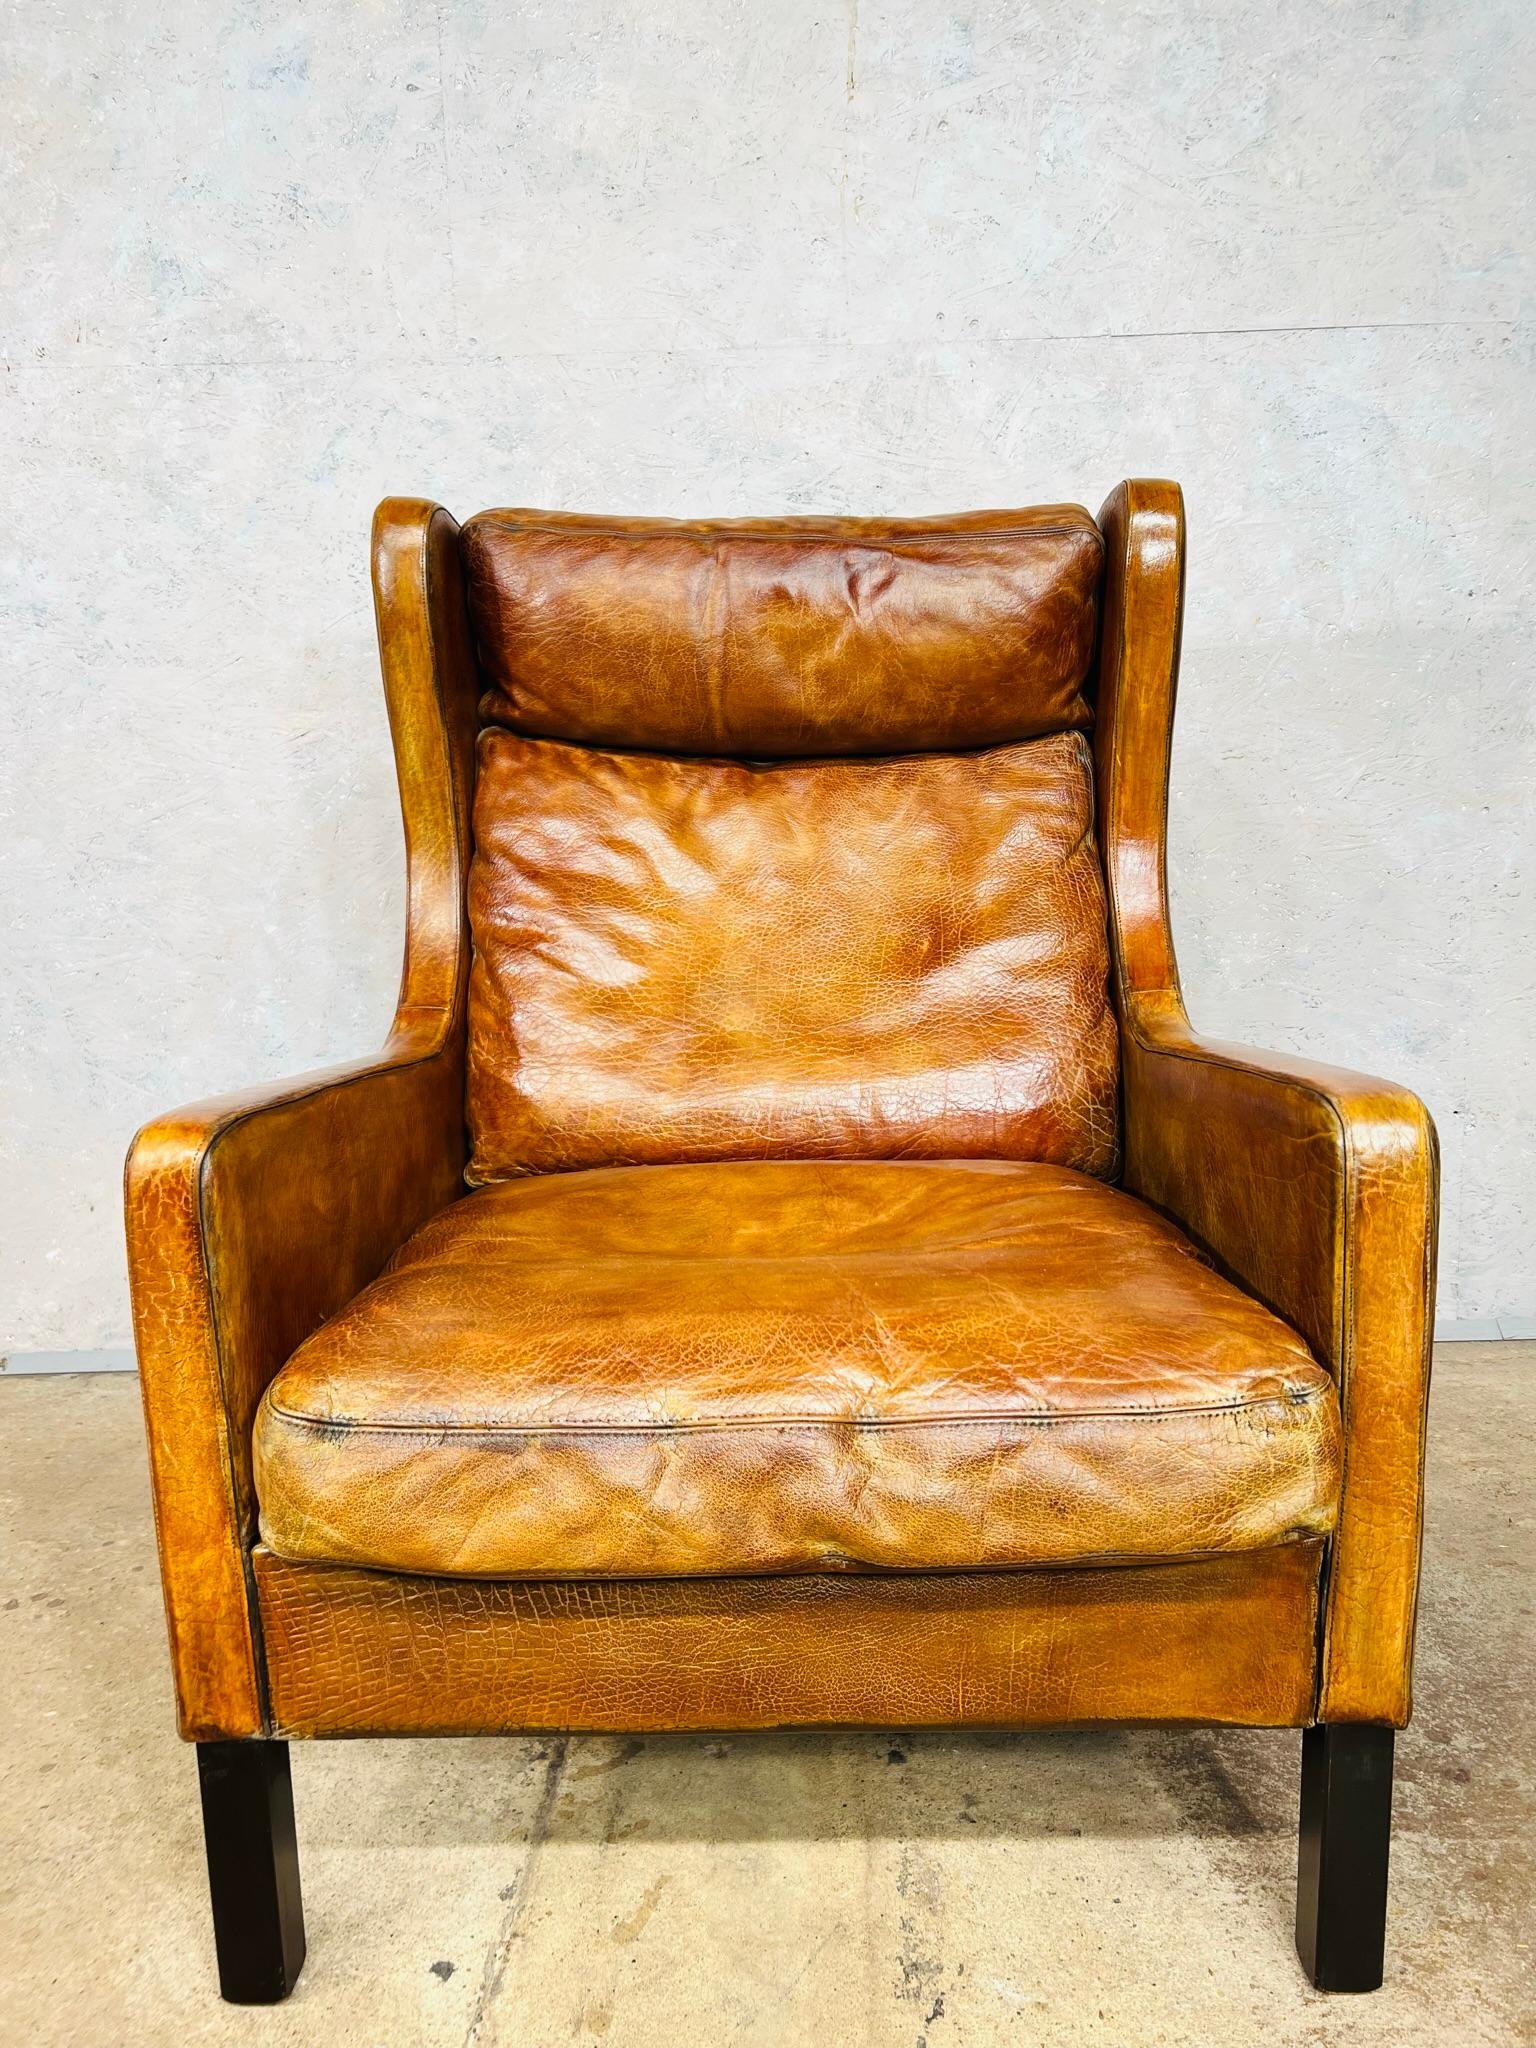 Superbe fauteuil vintage danois des années 1970 à dos d'âne du designer Thams Kvalitet. Ce fauteuil est d'une grande qualité, avec une forme et des proportions magnifiques. Très belle assise. En très bon état, avec une belle couleur bronze